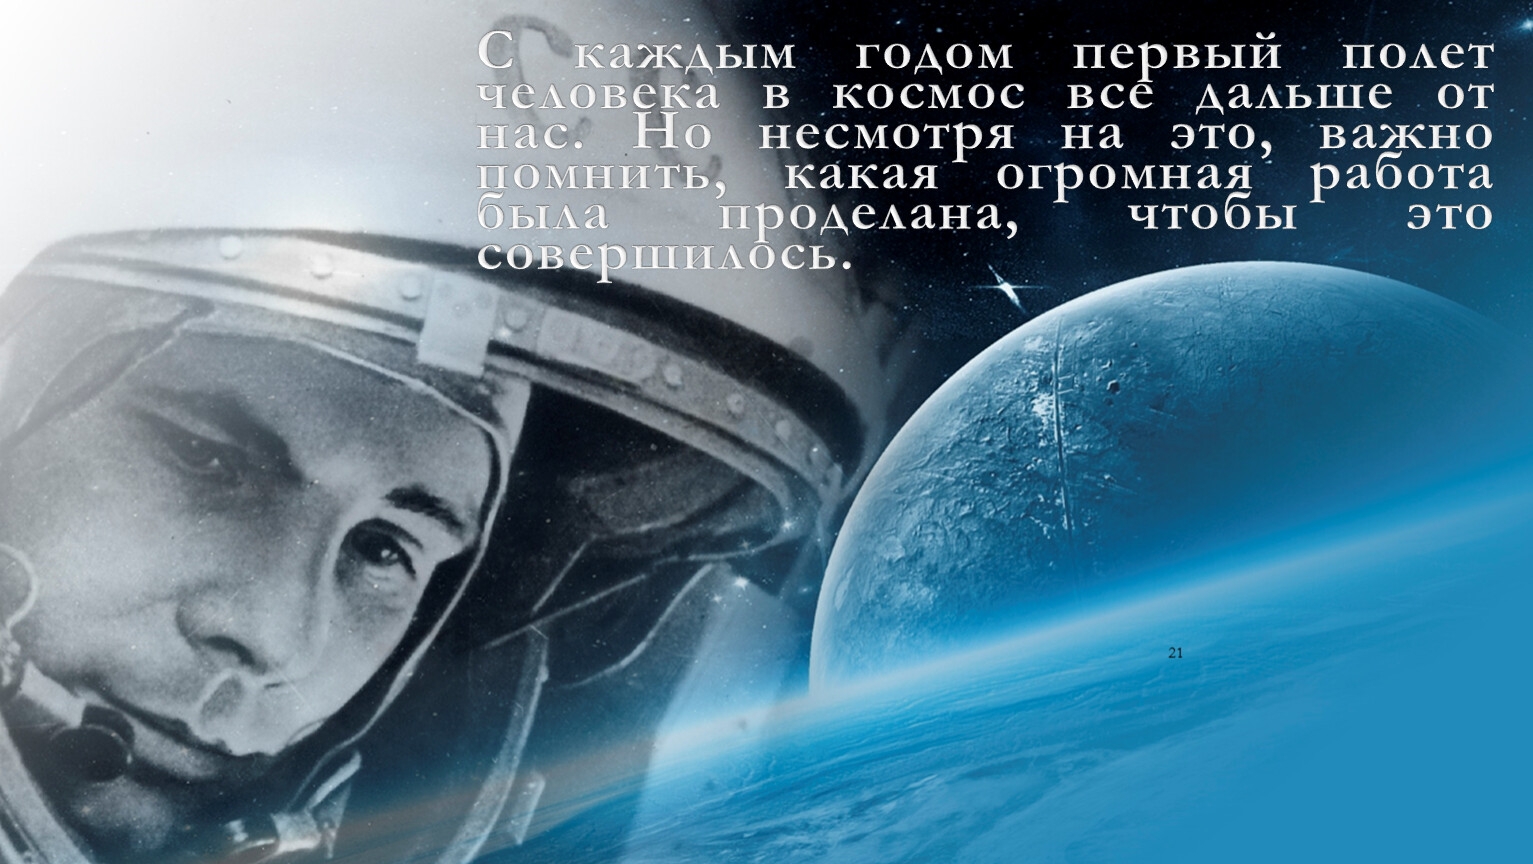 Запись первого полета в космос. Гагаринский урок «первый полет человека в космос». 60 Летие полета Гагарина в космос.